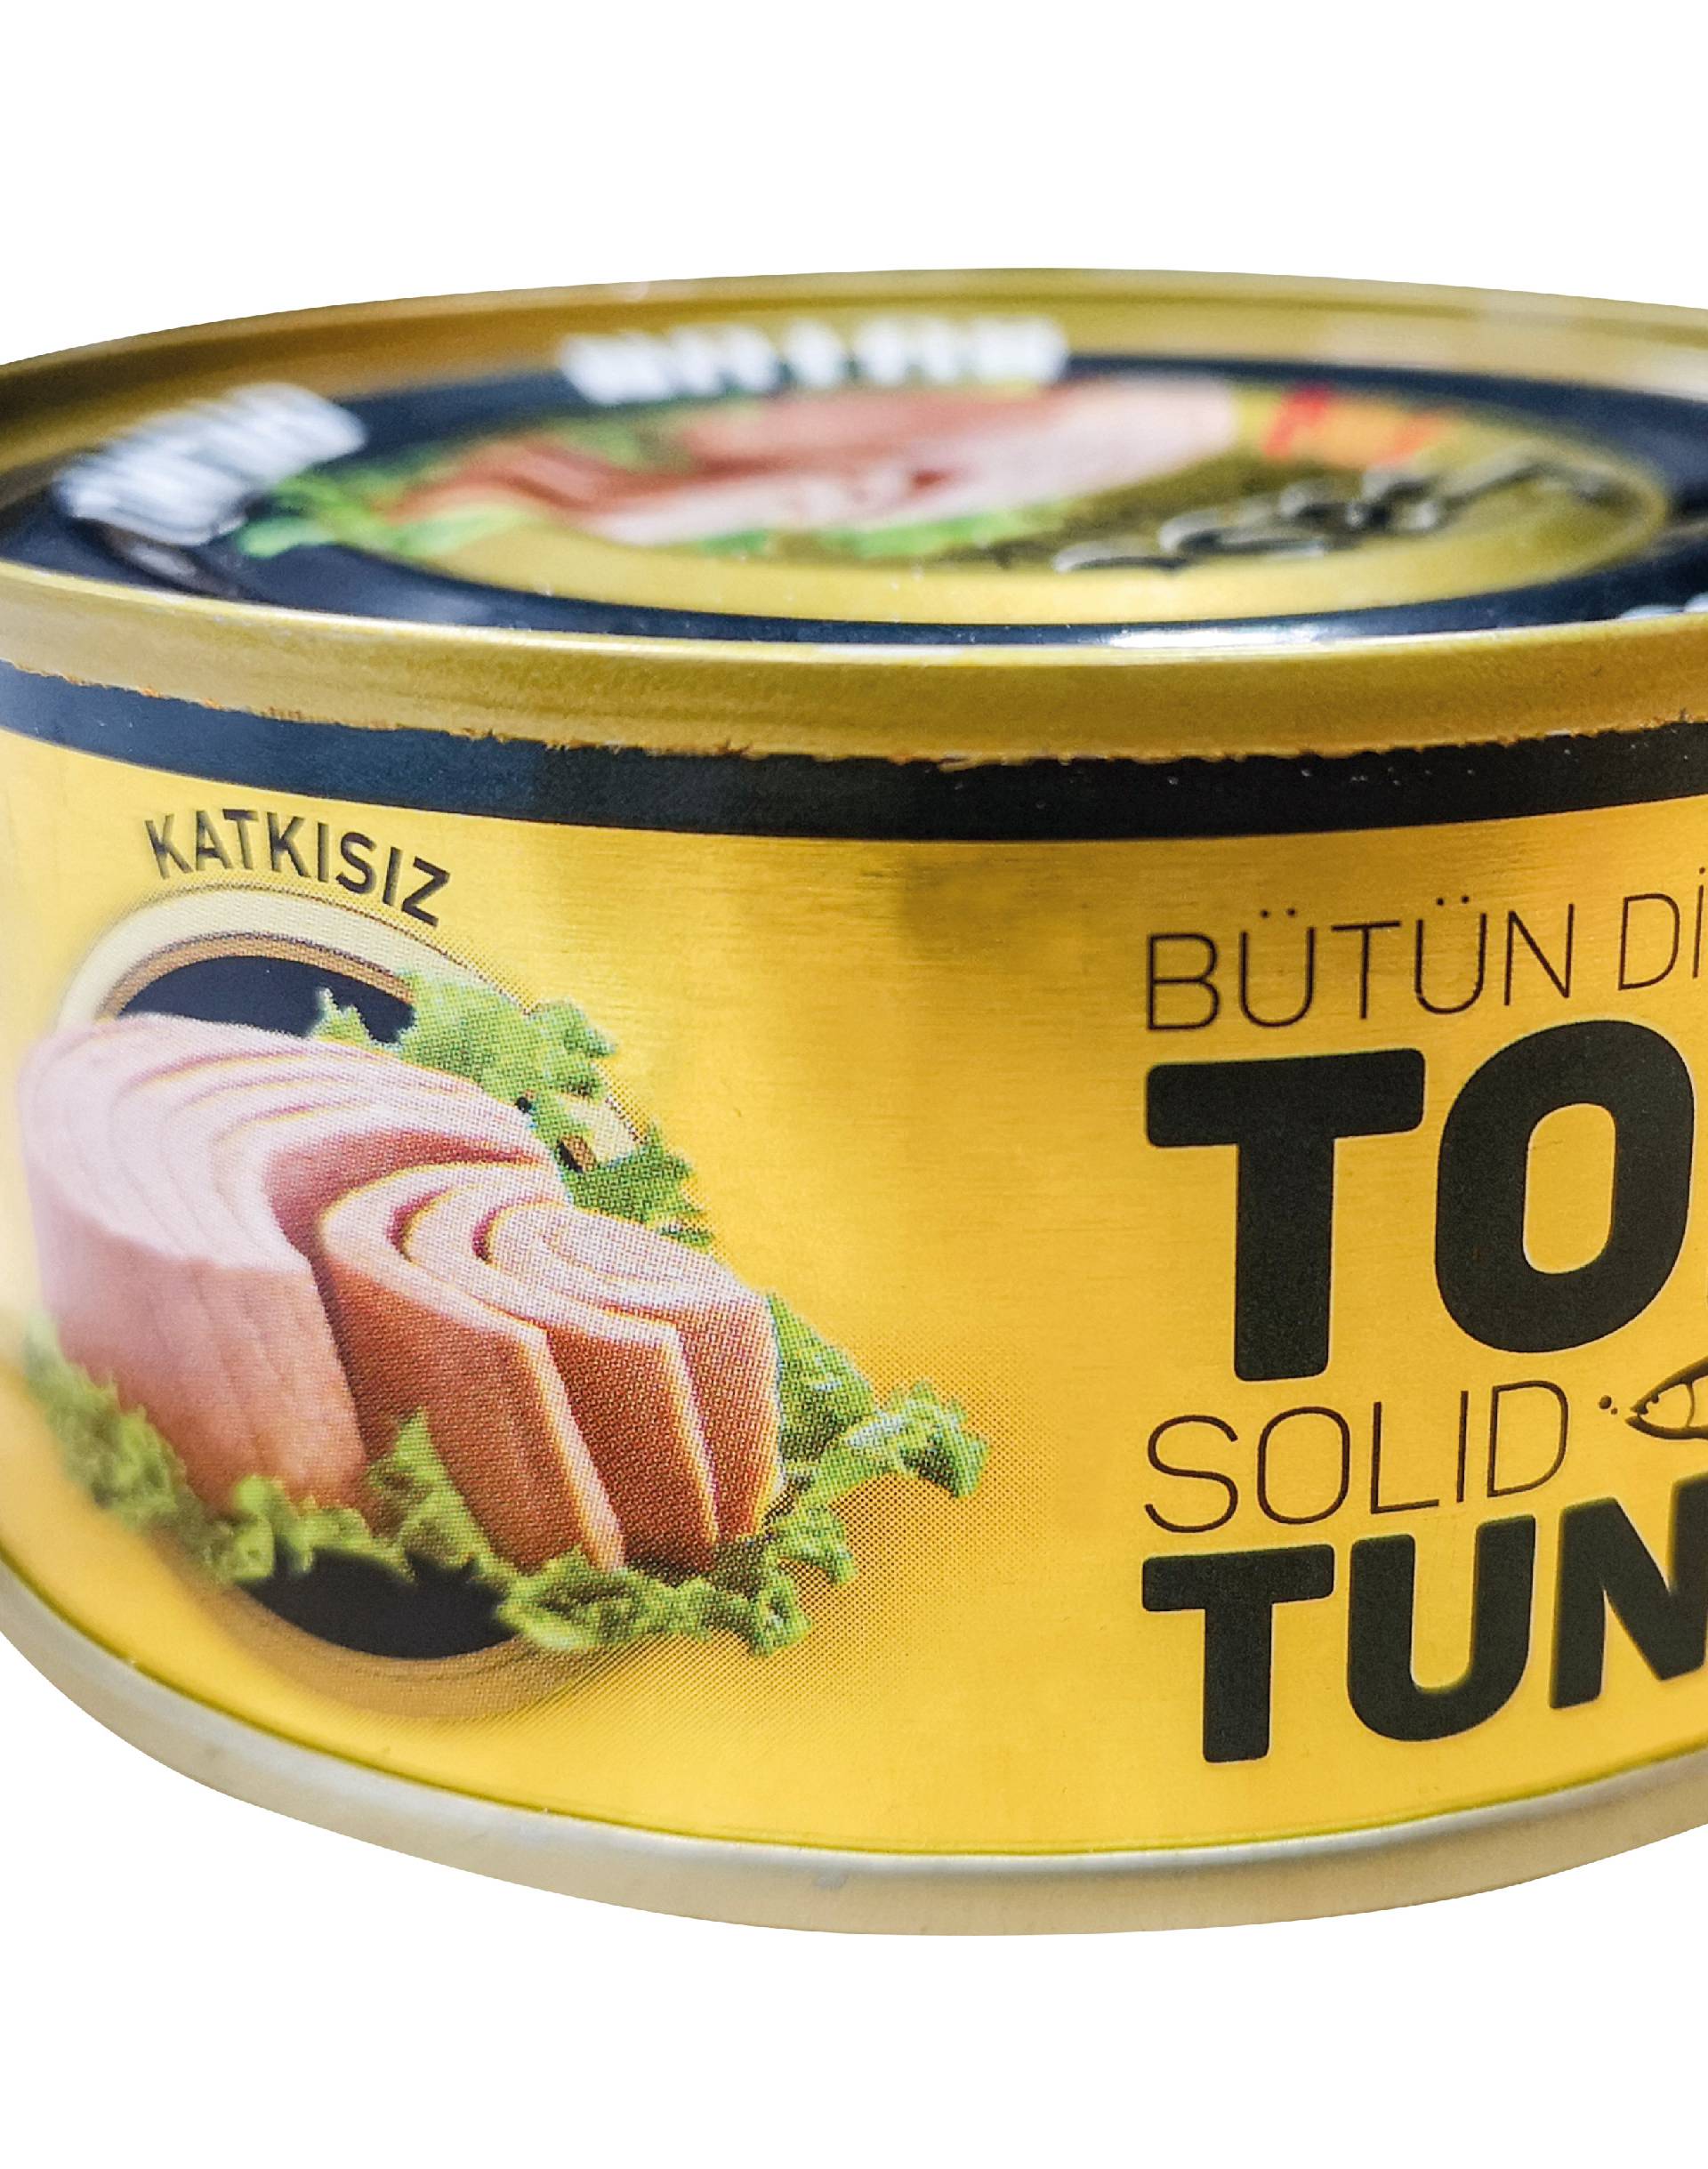 Konzerviranu tunjevinu povukli su iz prodaje - izaziva alergiju